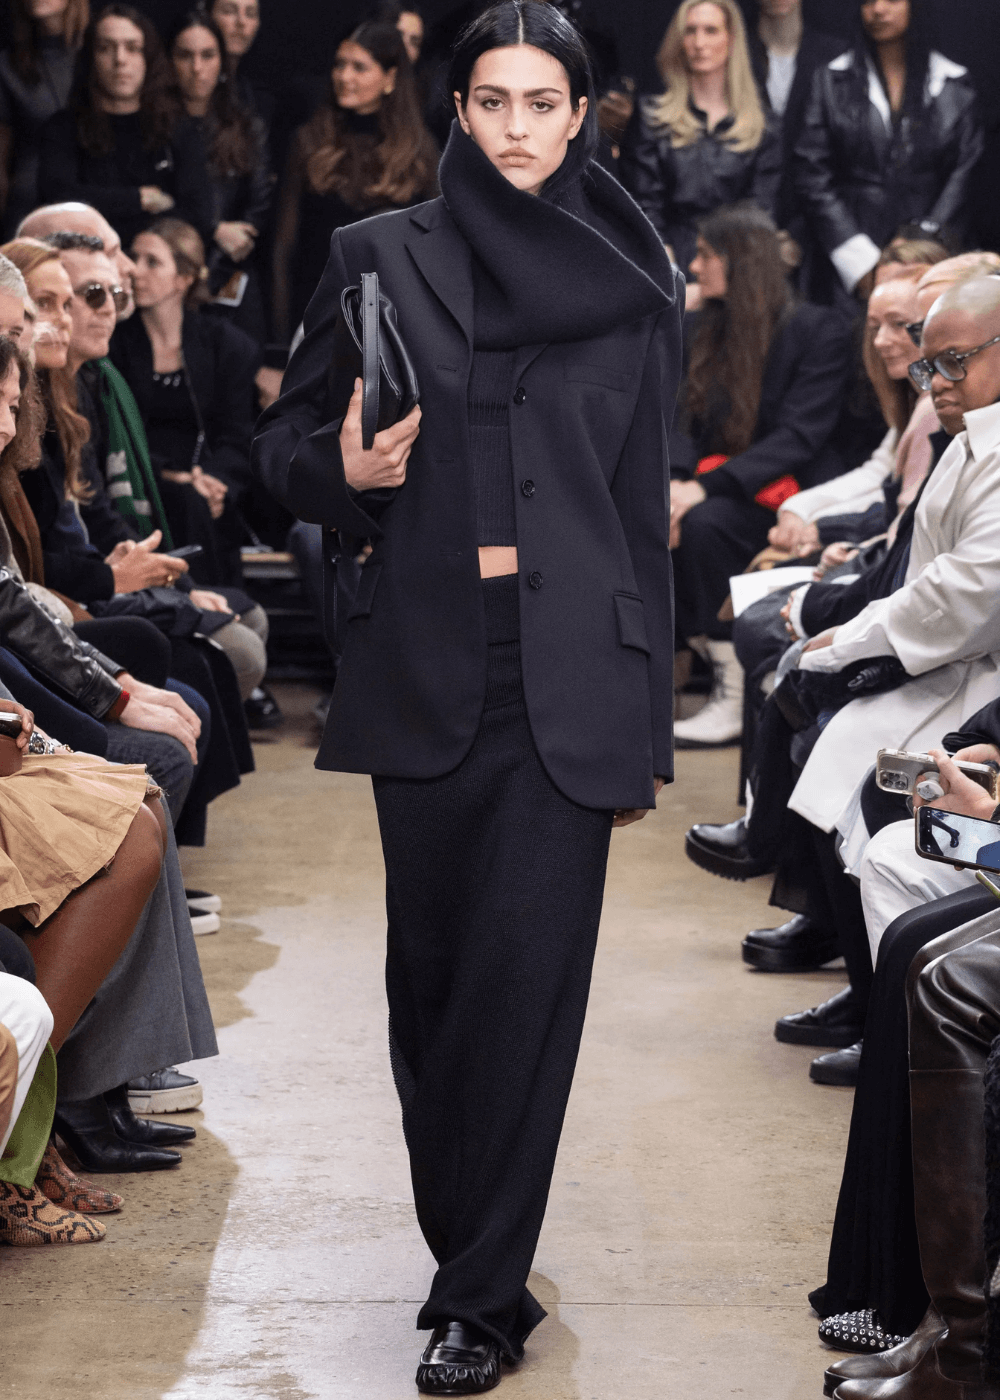 Proenza Schouler - saia longa preta, casaco preto e tricot de maxi gola - looks estilosos - inverno - modelo andando na passarela - https://stealthelook.com.br